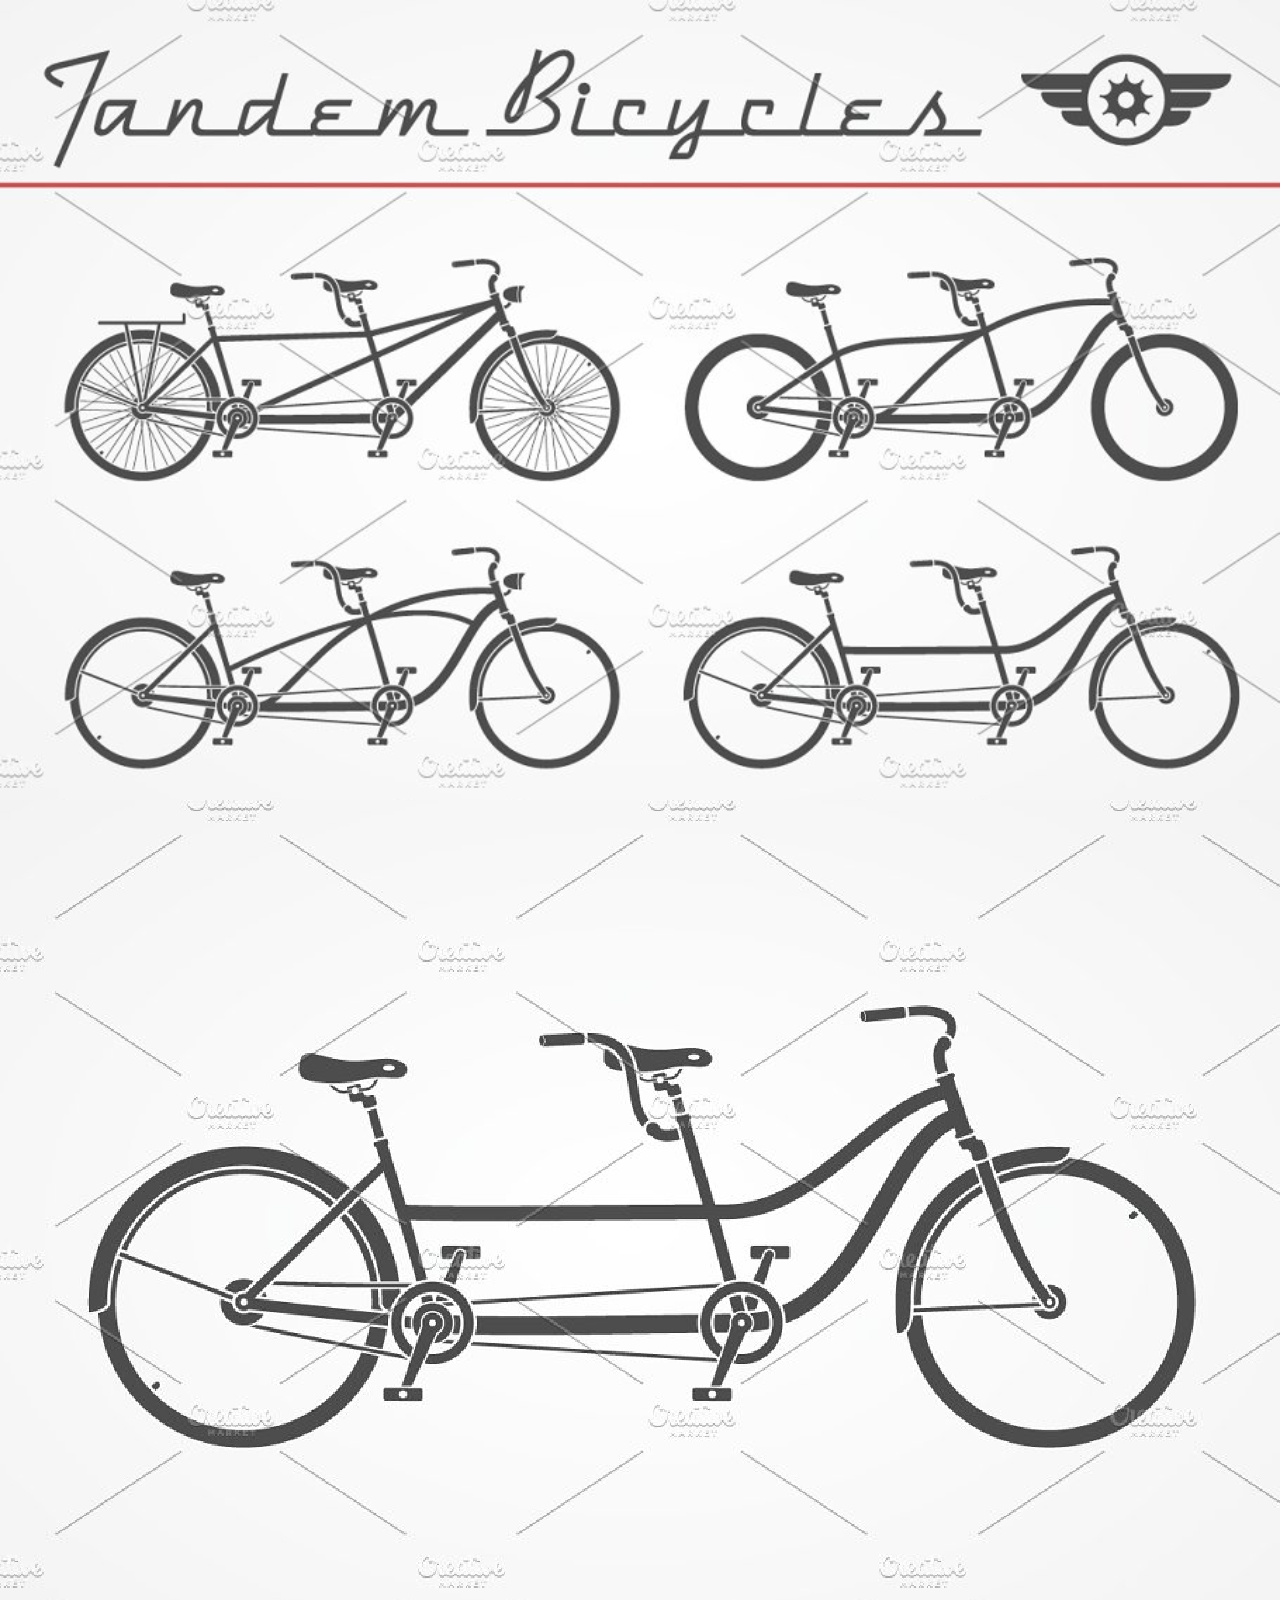 Tandem bicycle set main image preview.